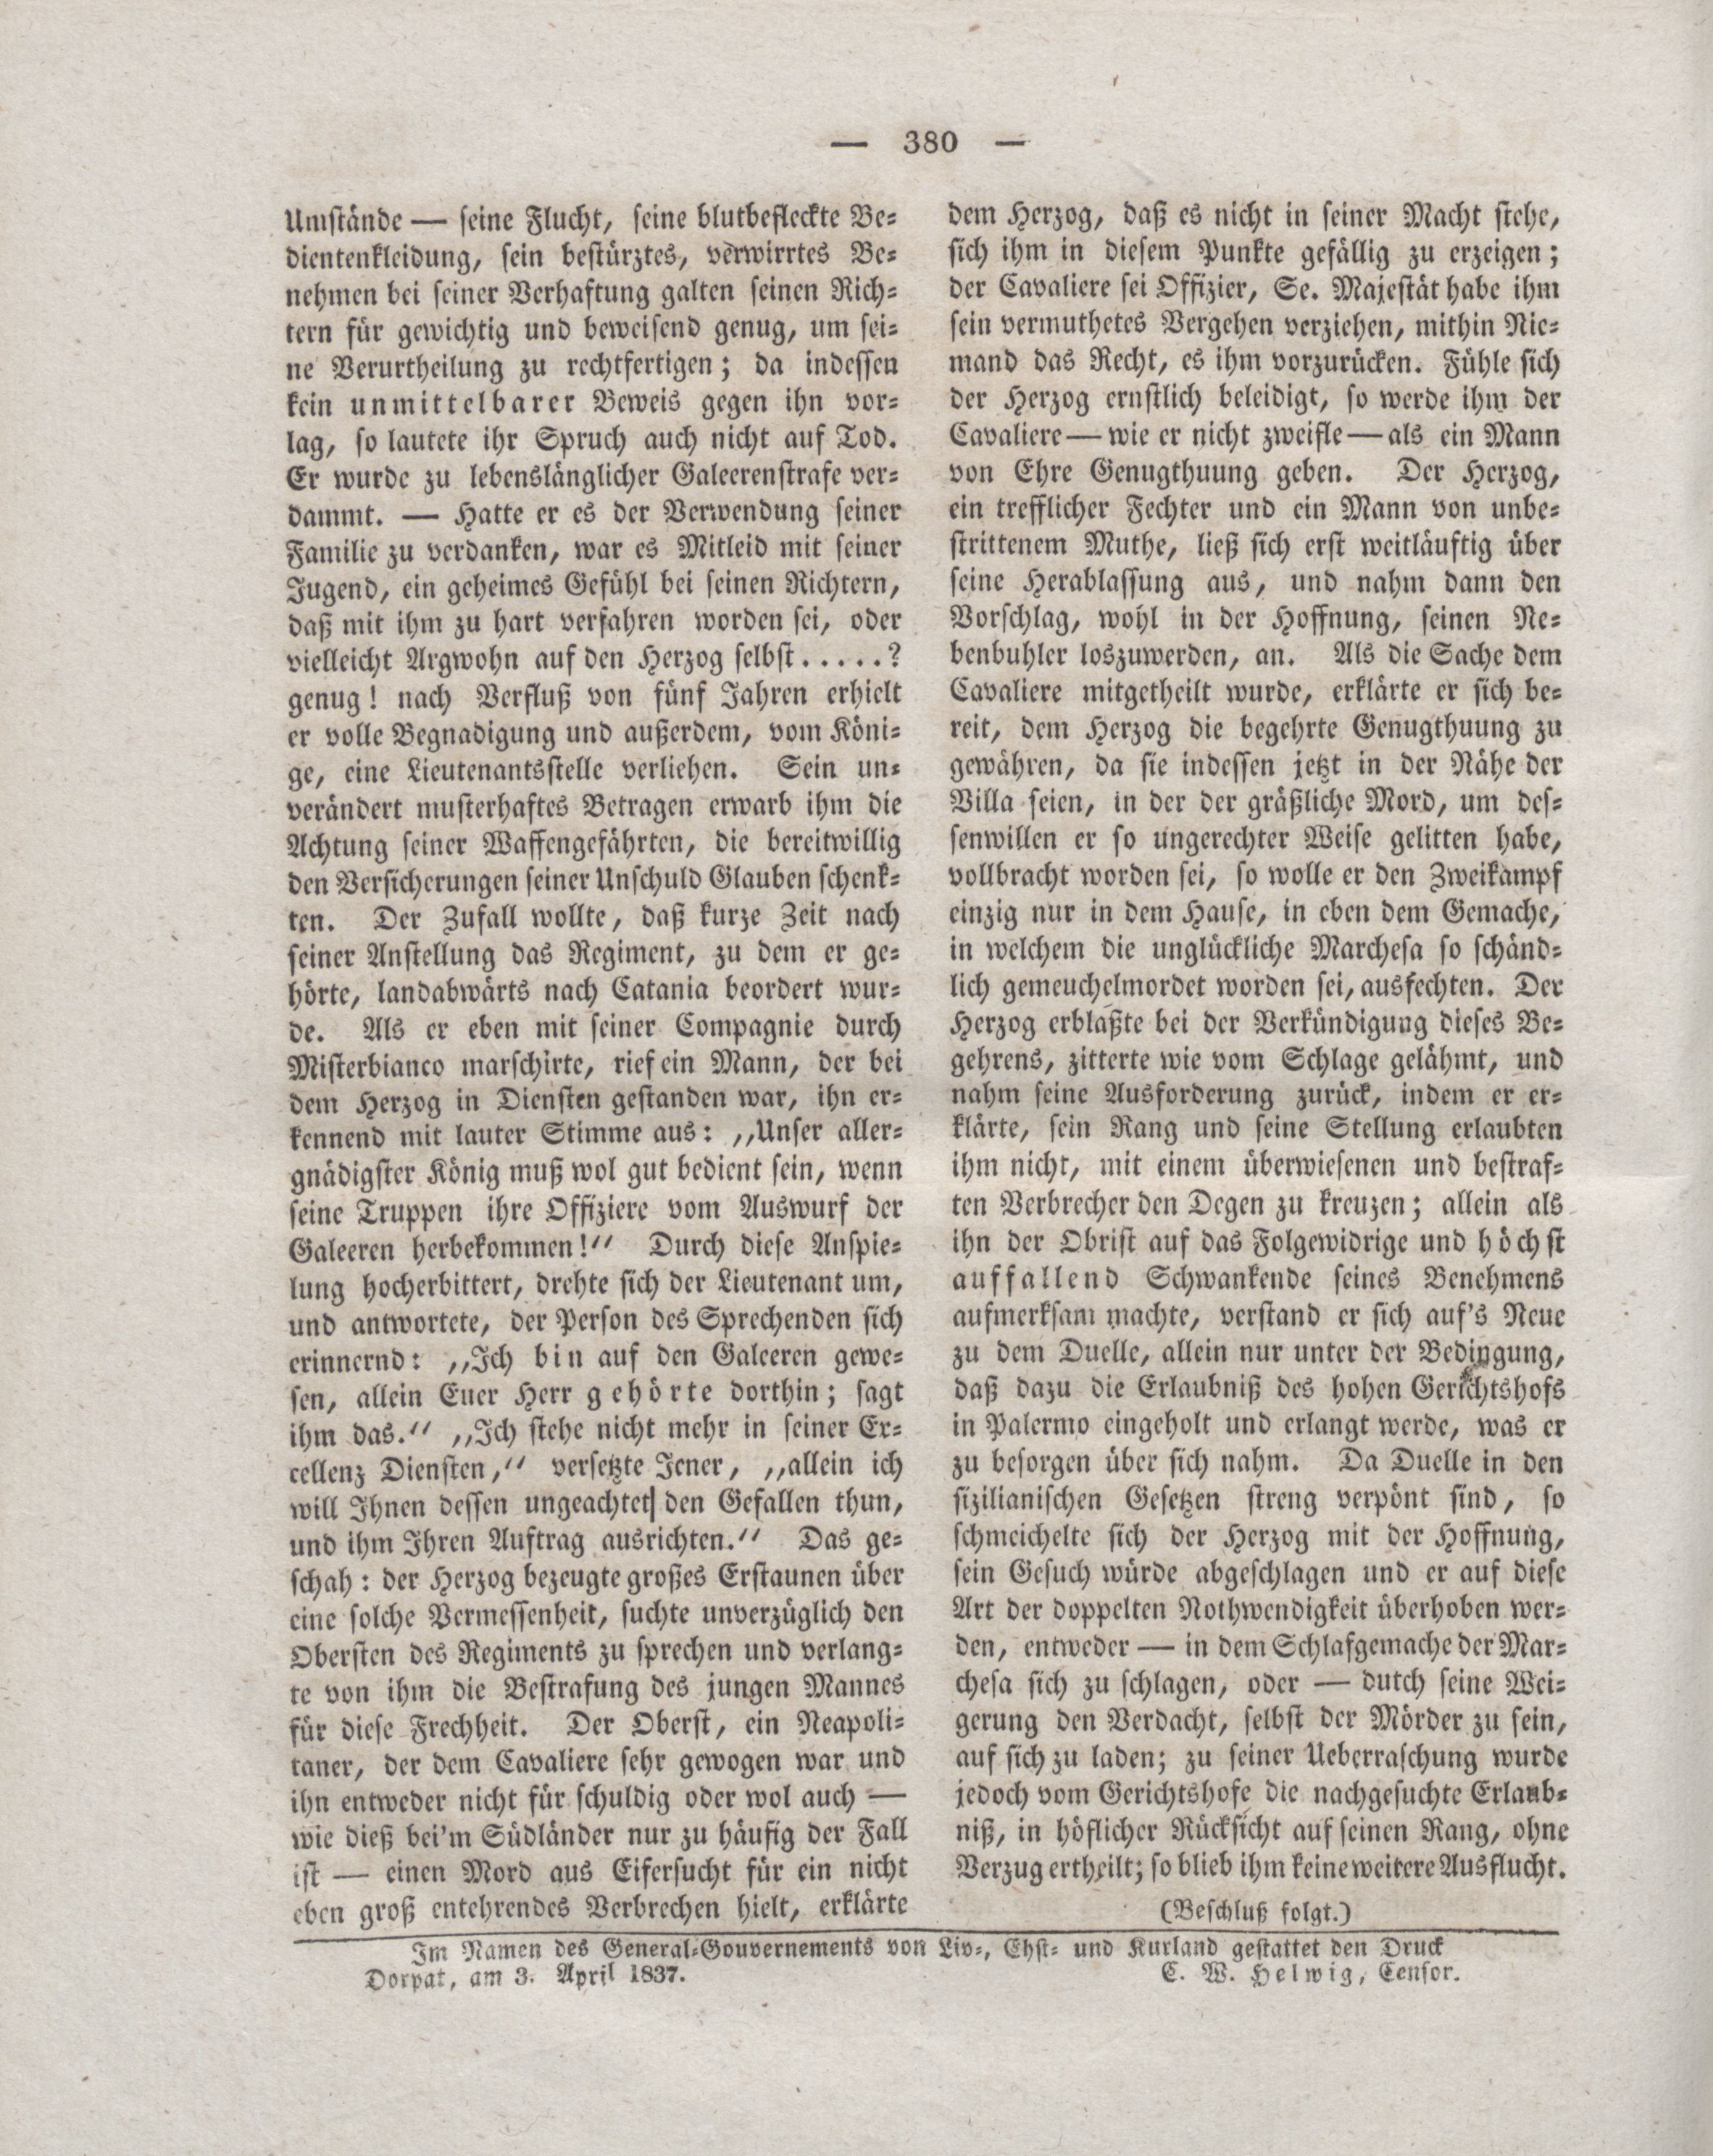 Der Refraktor [1837] (1837) | 96. (380) Haupttext